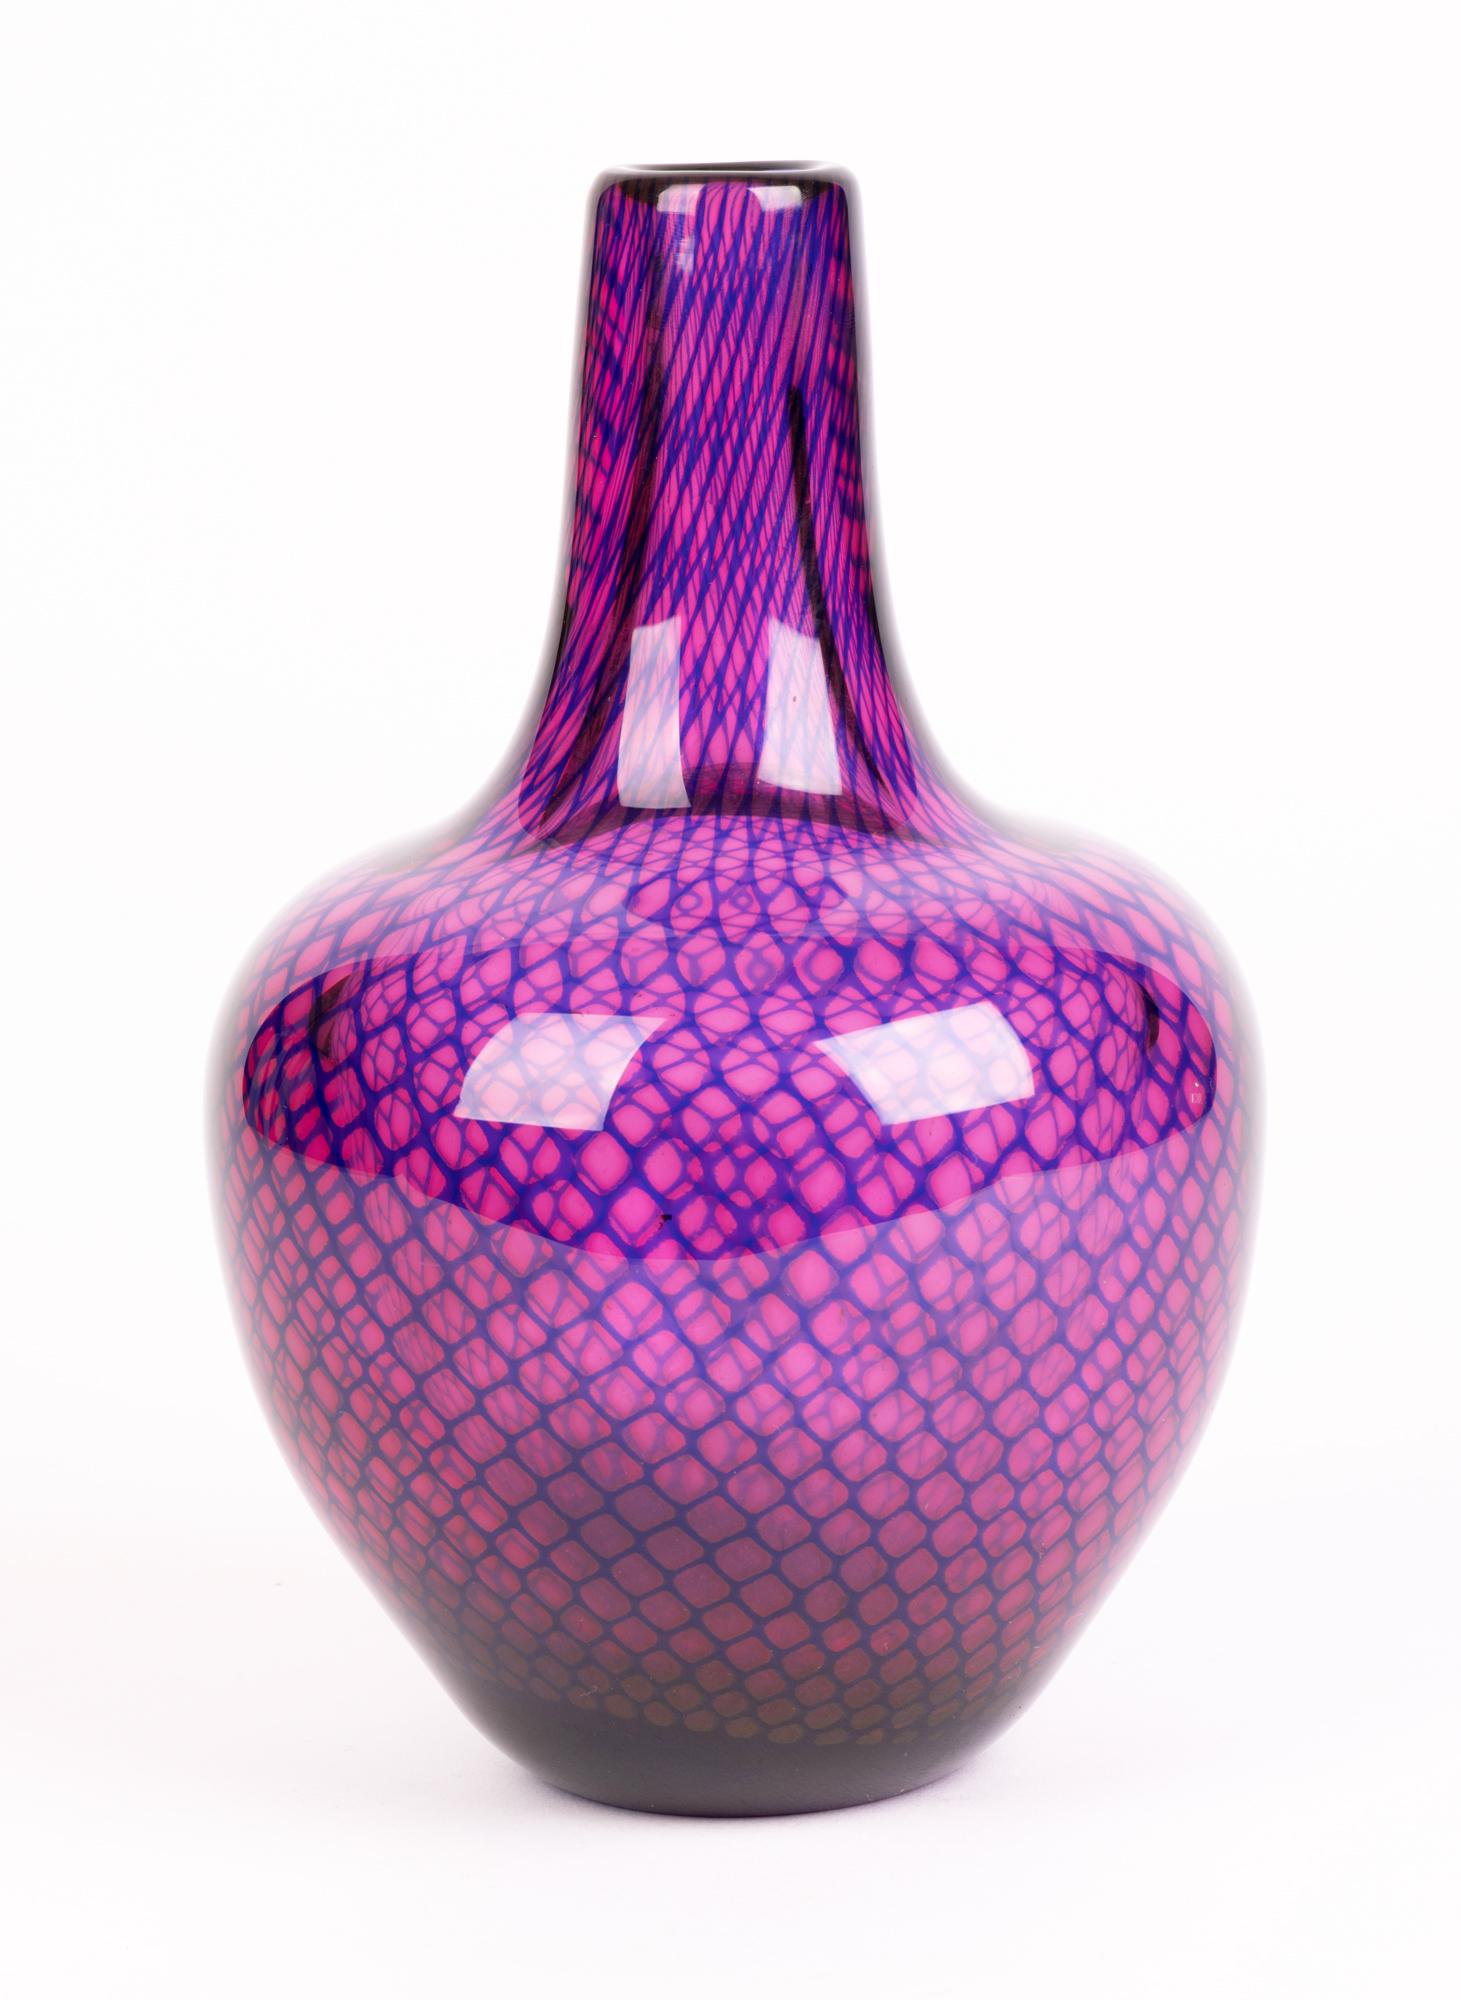 Sven Palmqvist Orrefors Kraka Net Pattern Art Glass Vase For Sale 7